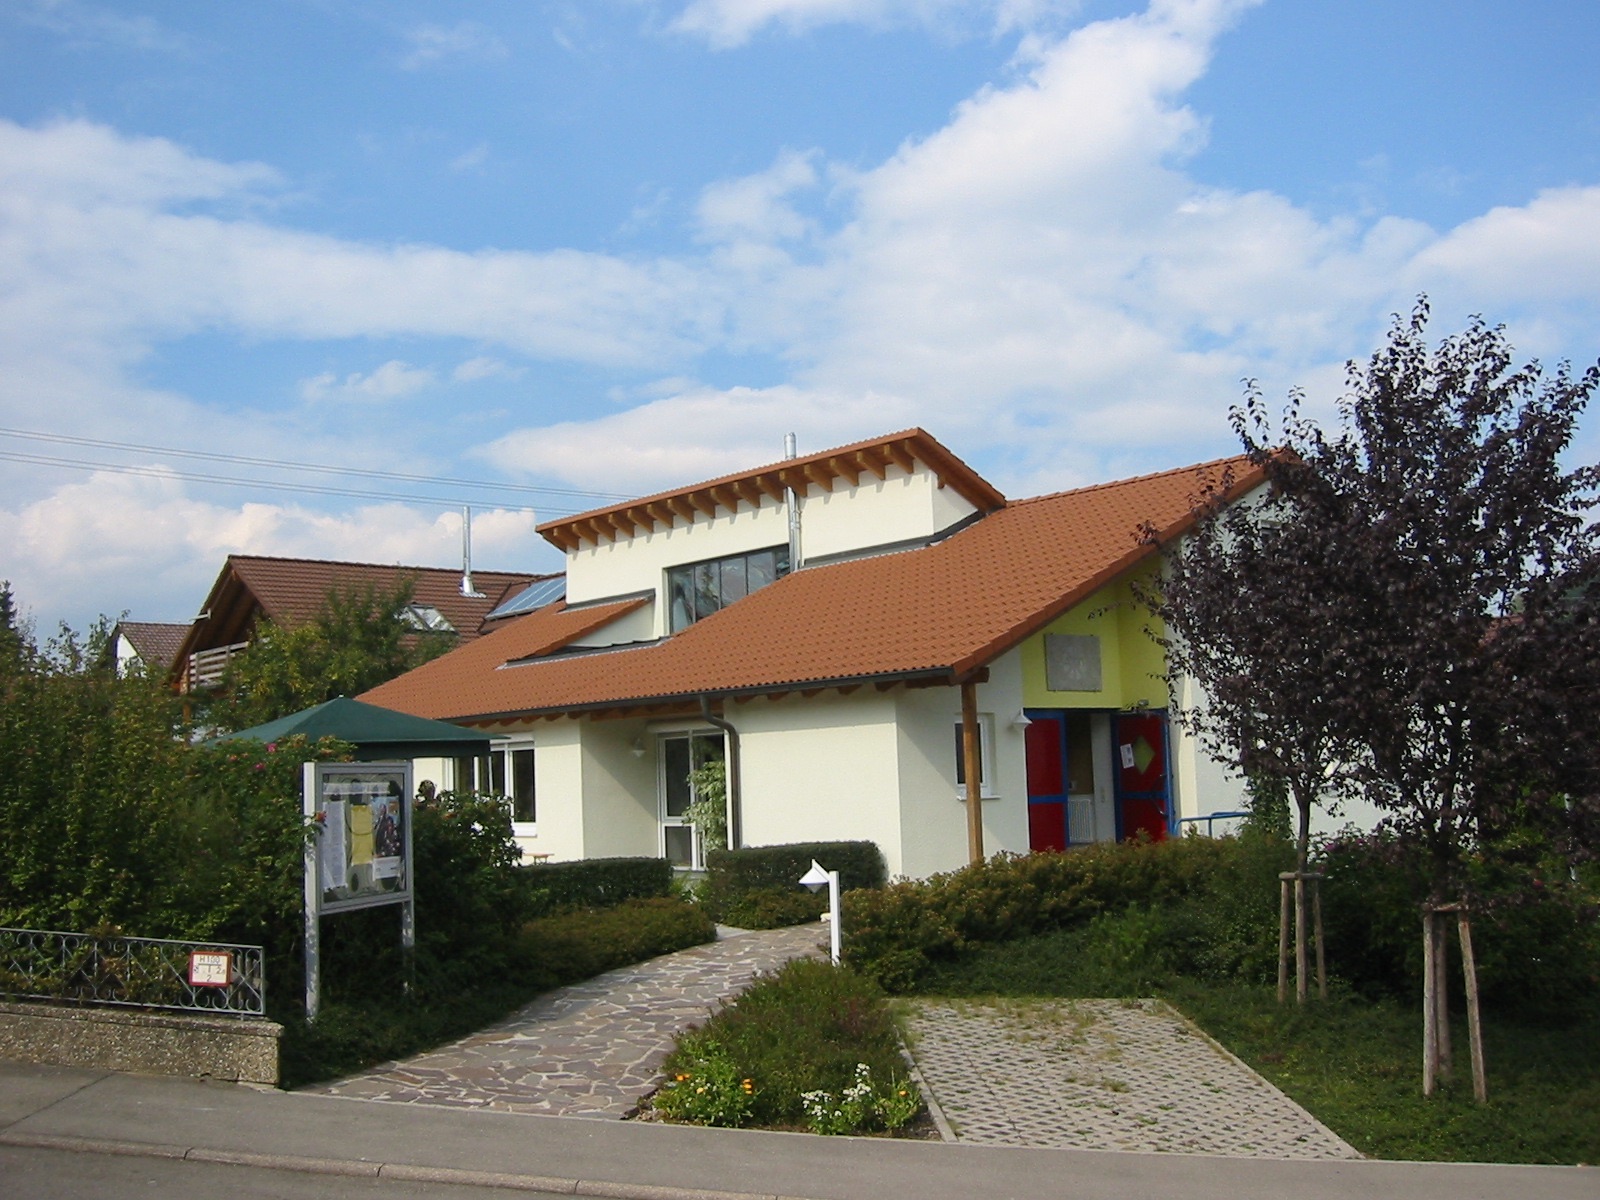  katholisches Gemeindehaus 